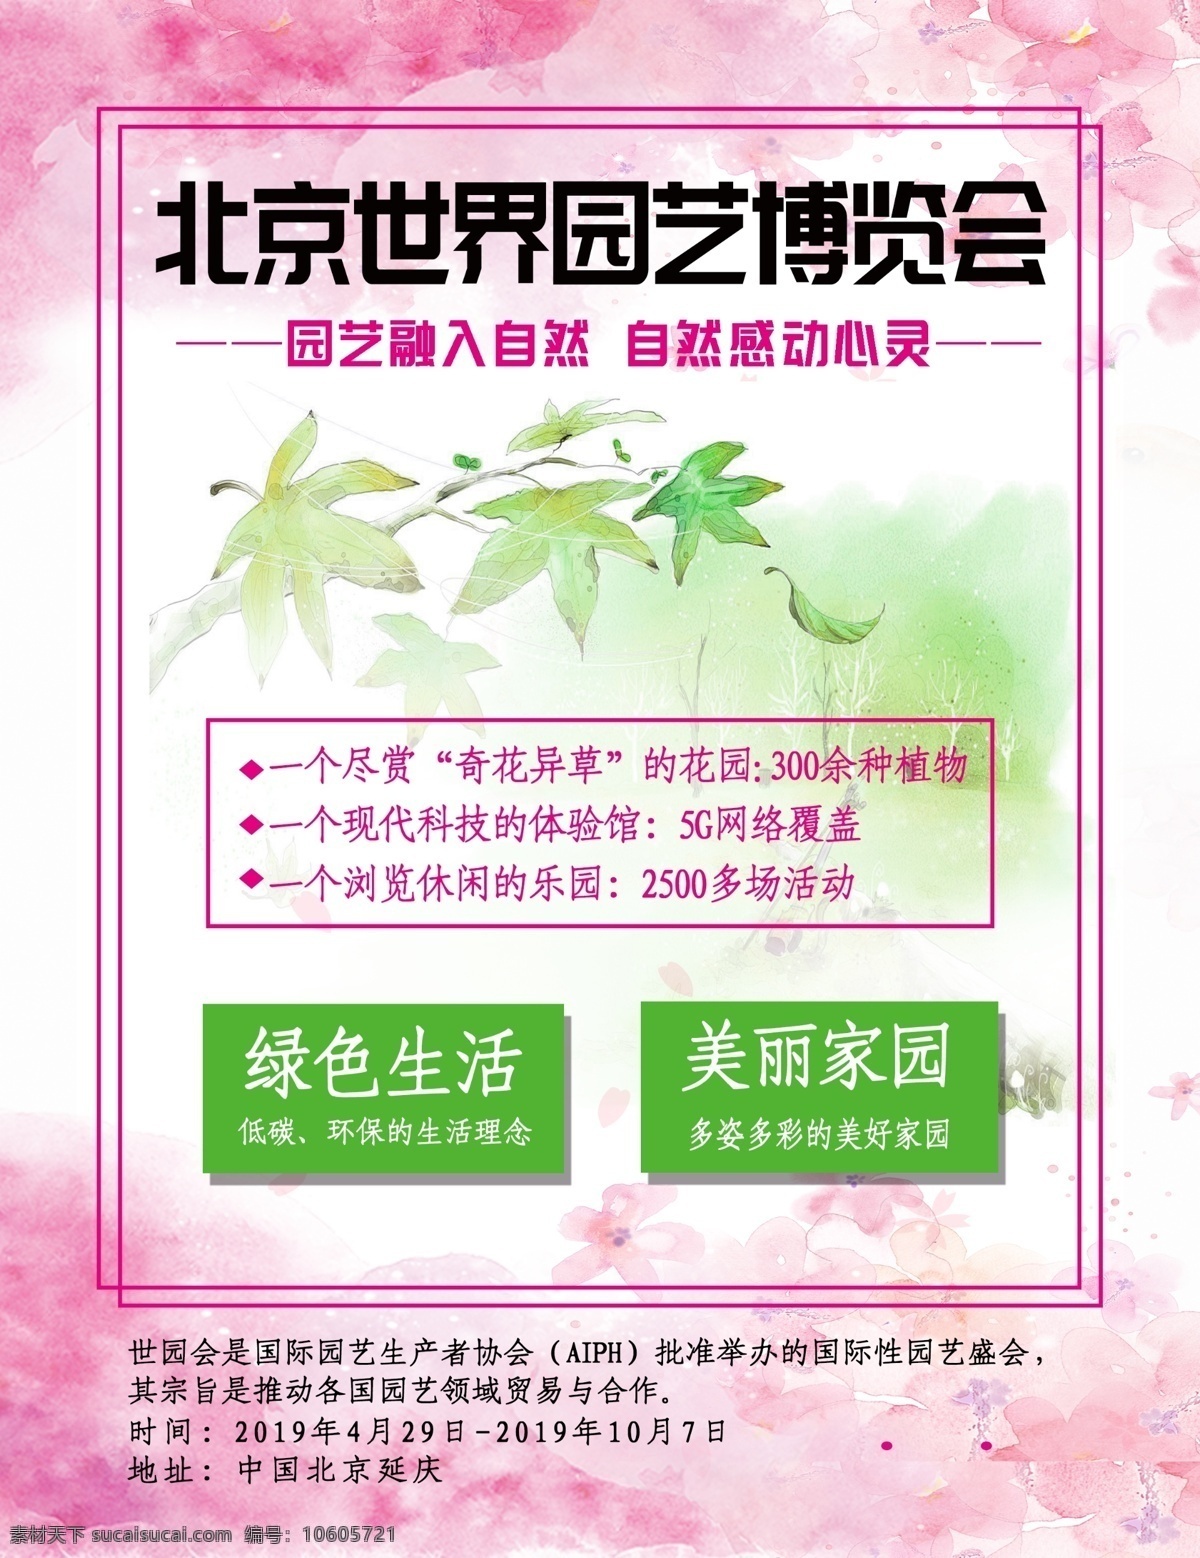 北京 世界园艺博览会 粉色 自然 绿色生活 海报